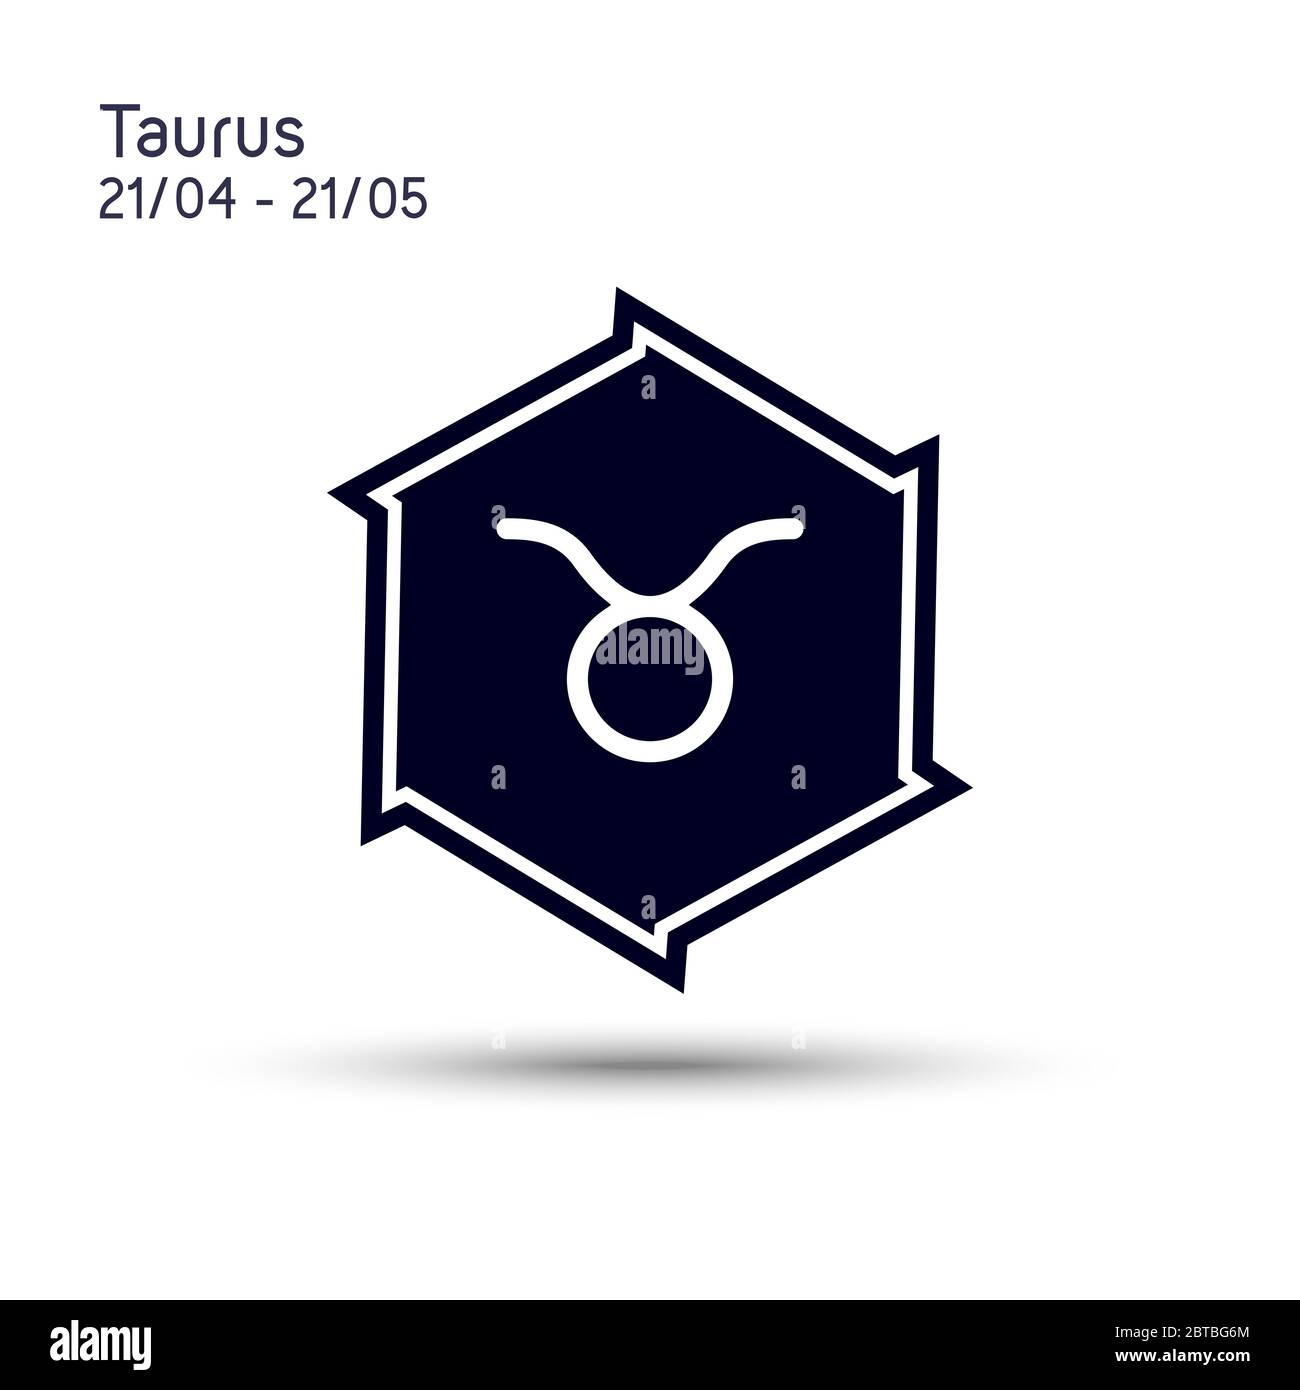 Taurus zodiaco segno in una stella a sei punte con bordi affilati. Design piatto a icone. Simbolo astrologico isolato su sfondo bianco. Stella a 6 punti vettoriale. Illustrazione Vettoriale